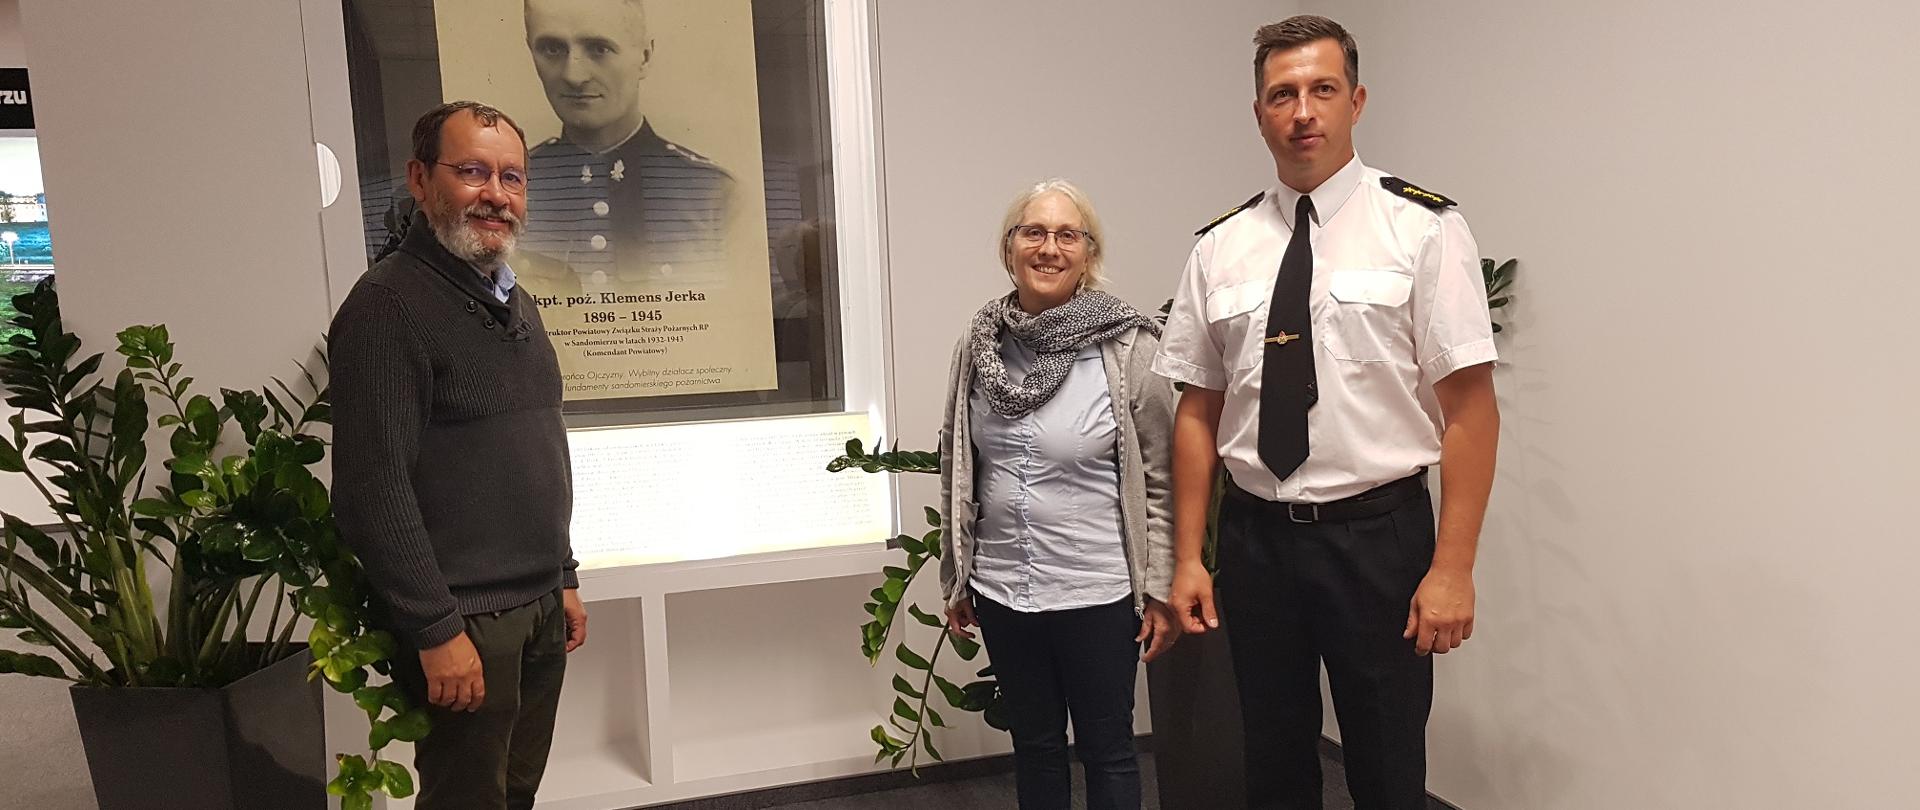 Zdjęcie zrobione w reprezentacyjnej Sali Komendy. Przedstawia trzy osoby stojące przy miejscu pamięci o kpt. Jerce. Jeden z mężczyzn stoi po lewej stronie a kobieta i strażak w mundurze stoją po prawej stronie. W środku znajduje gablotka ze zdjęciem i notą biograficzna kapitana Jerki.